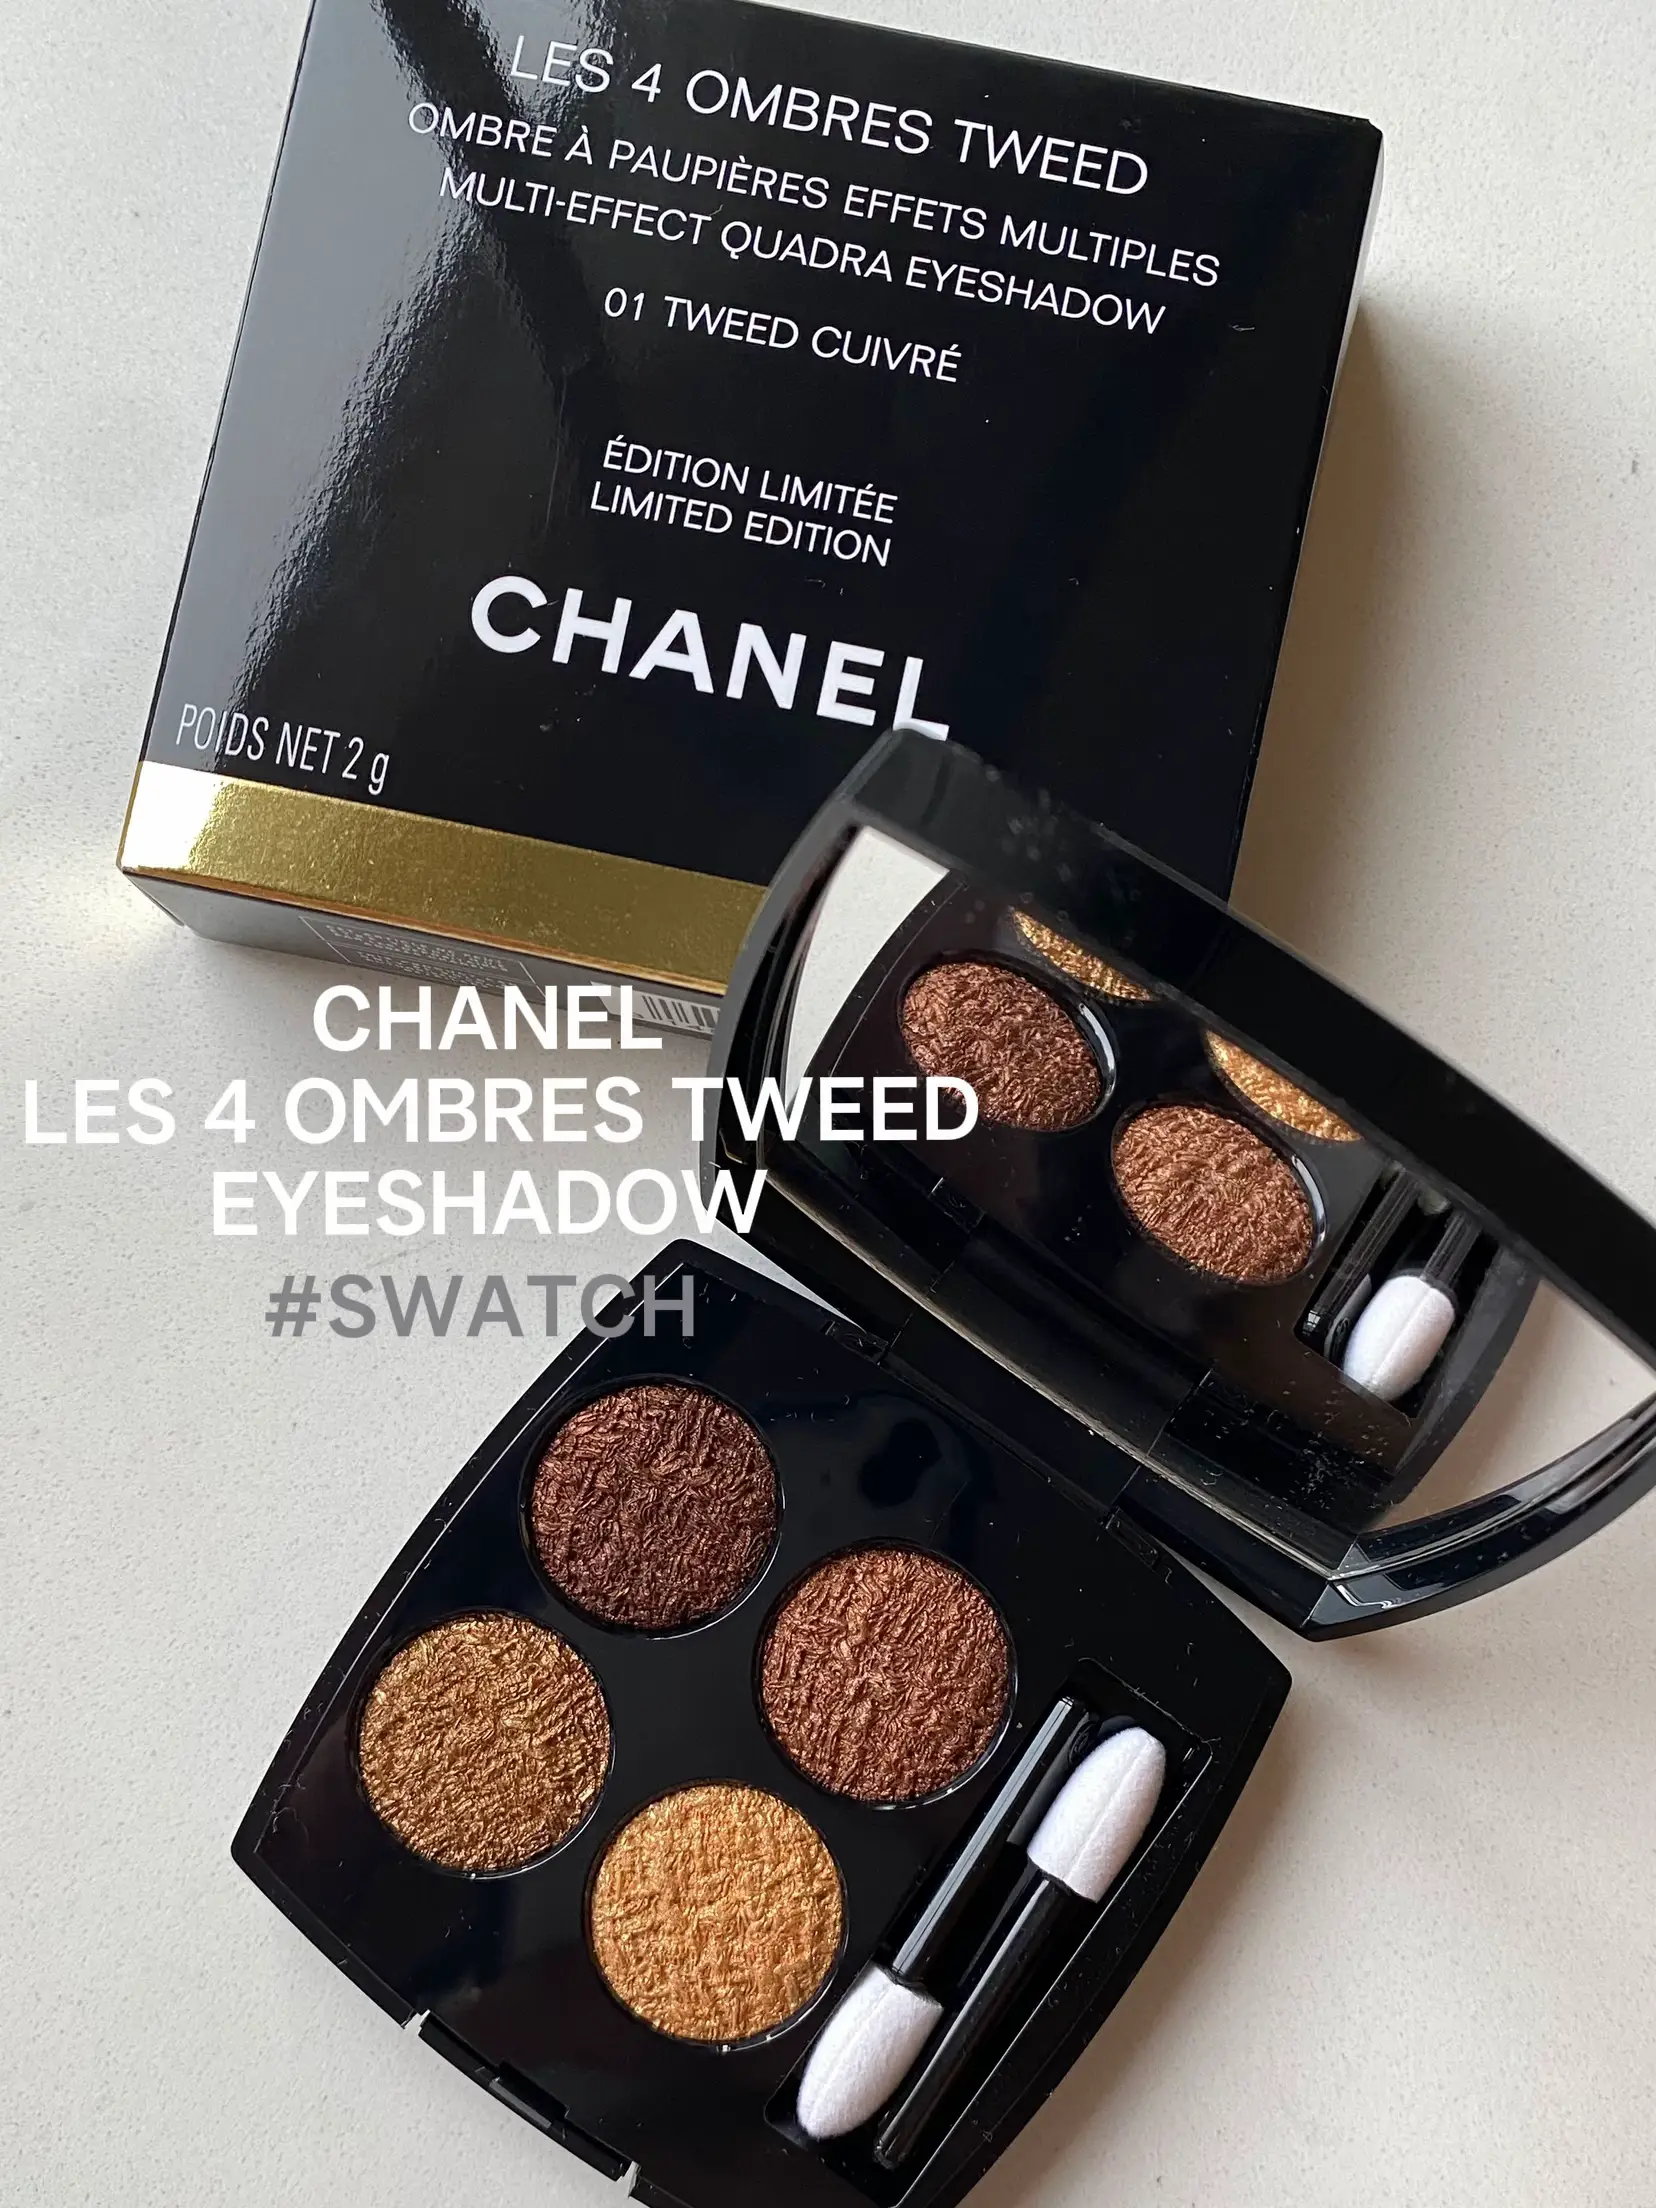 Chanel Les 4 Ombres Tweed : Mention Très Bien !